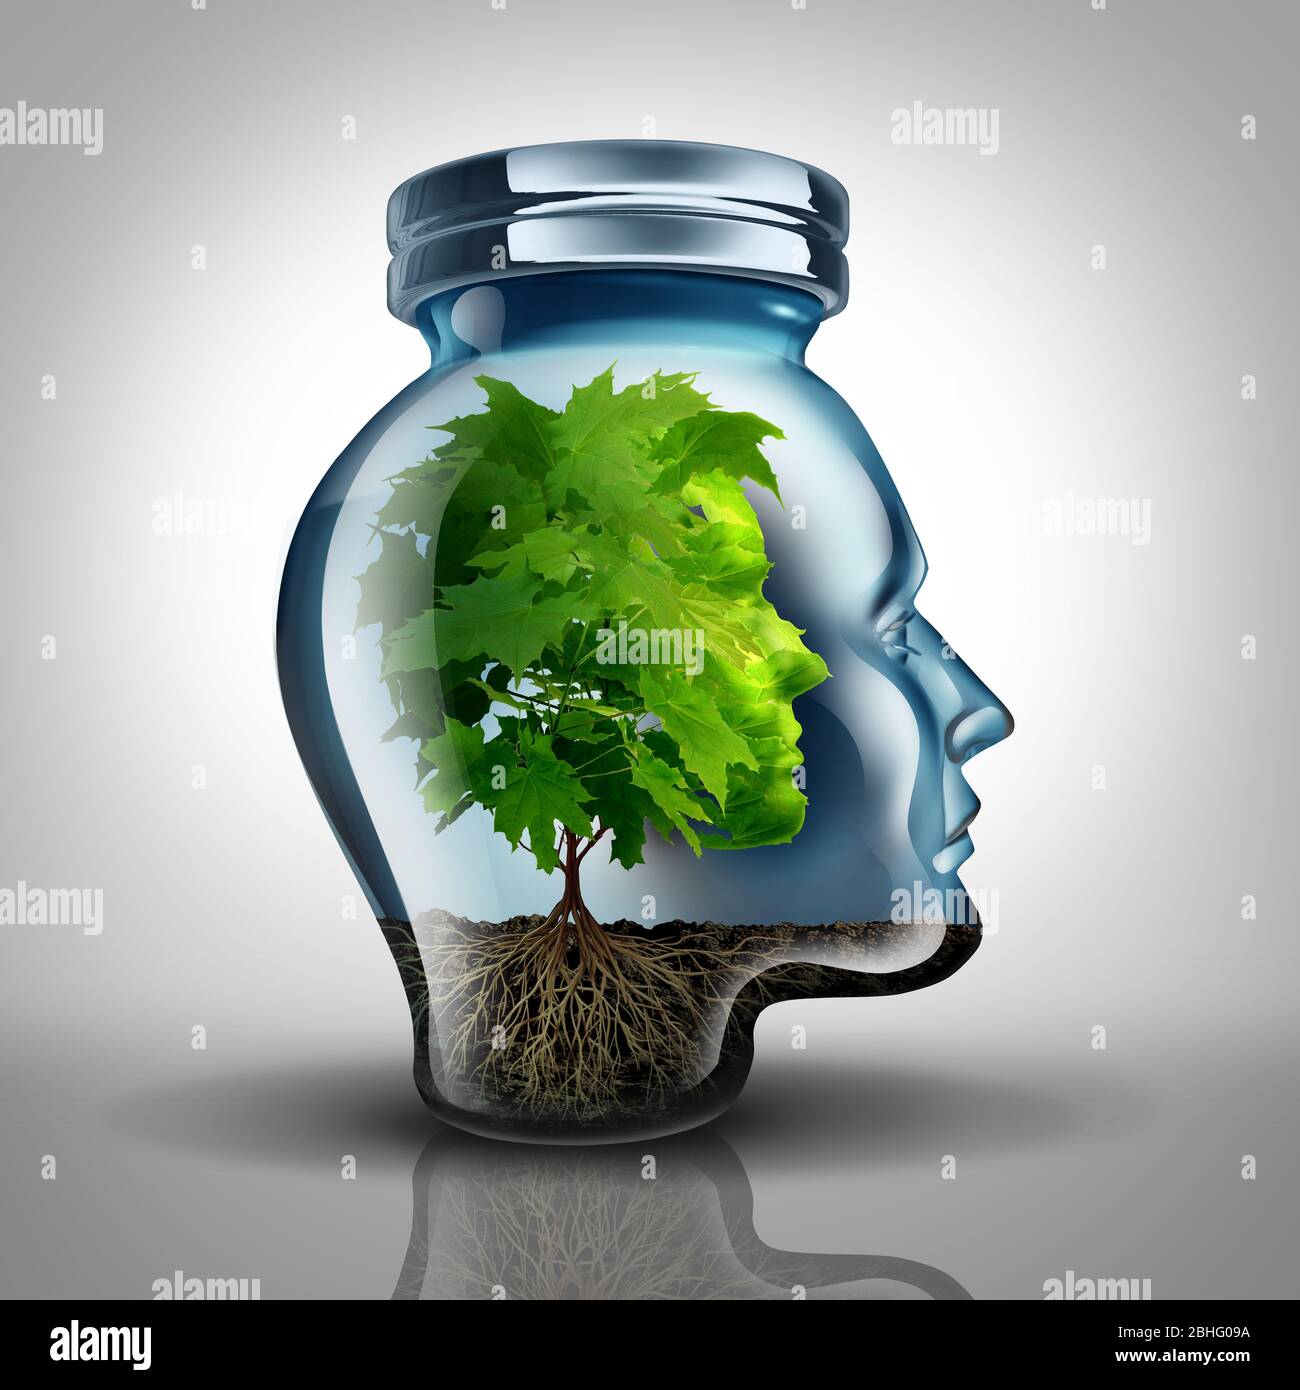 Innere Wachstumspsychologie Konzept und persönliche Entwicklungsidee als Glas geformt wie ein menschlicher Kopf mit einem Baum im Inneren repräsentiert psychische Gesundheit. Stockfoto